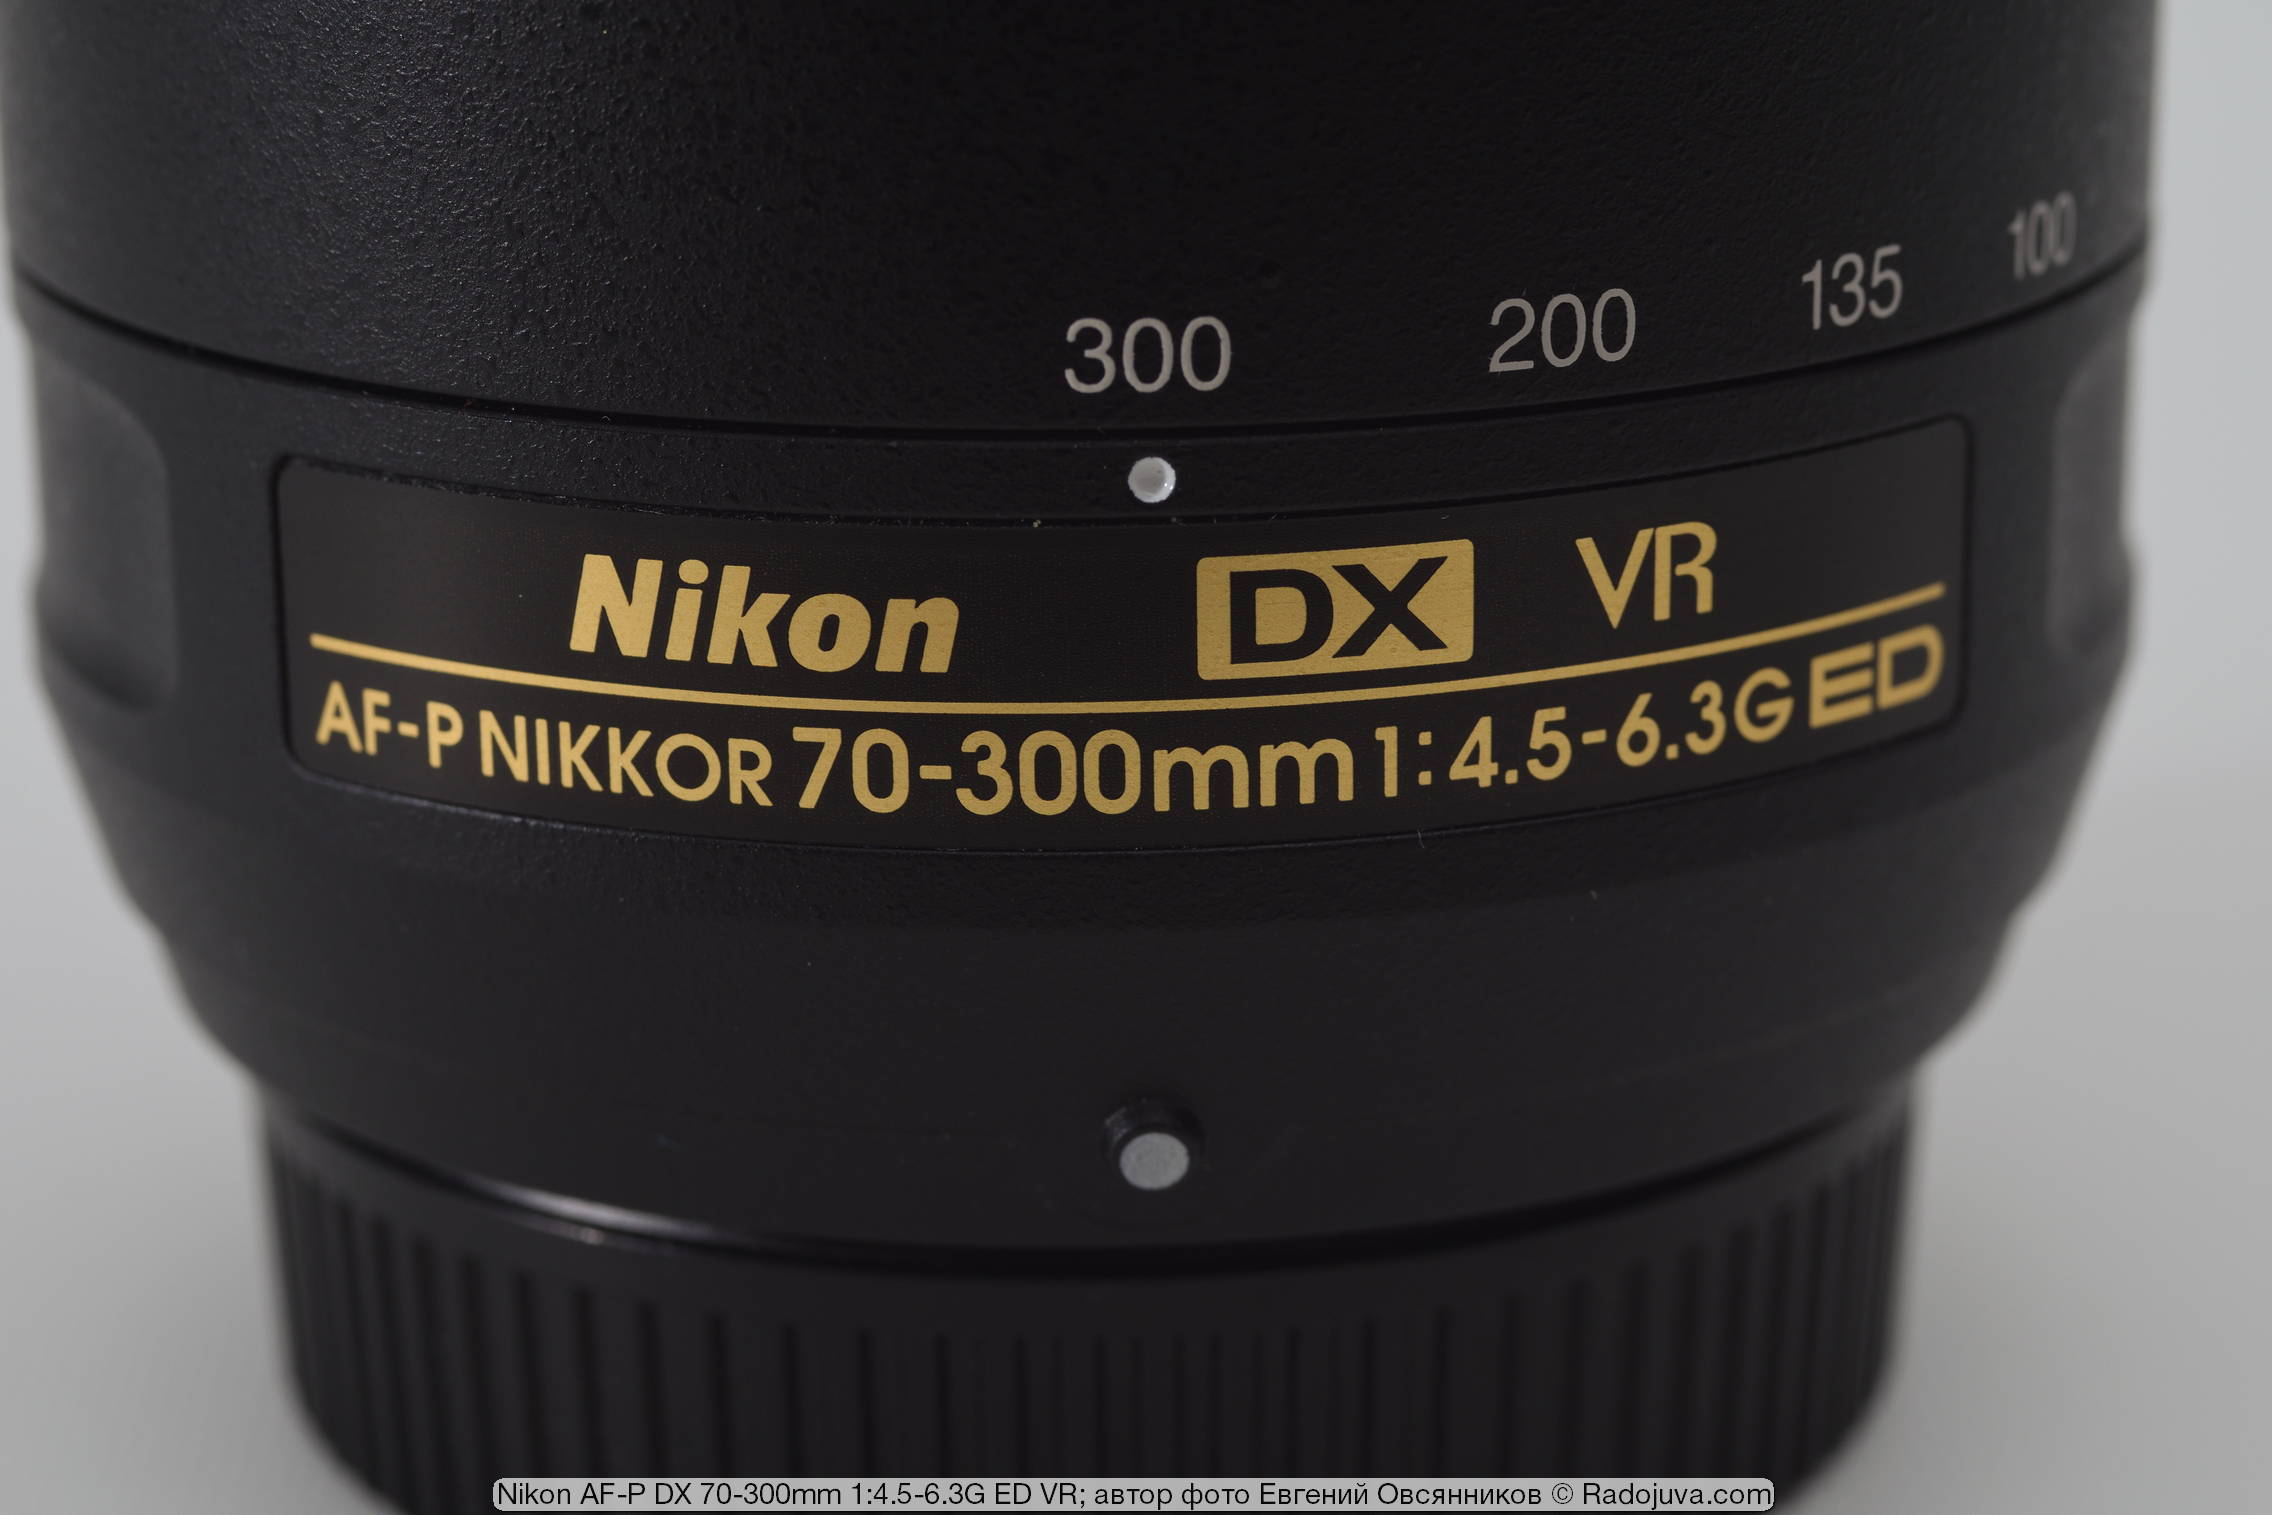 Nikon AF-P DX Nikkor 70-300mm 1: 4.5-6.3G ED VR. Review from the